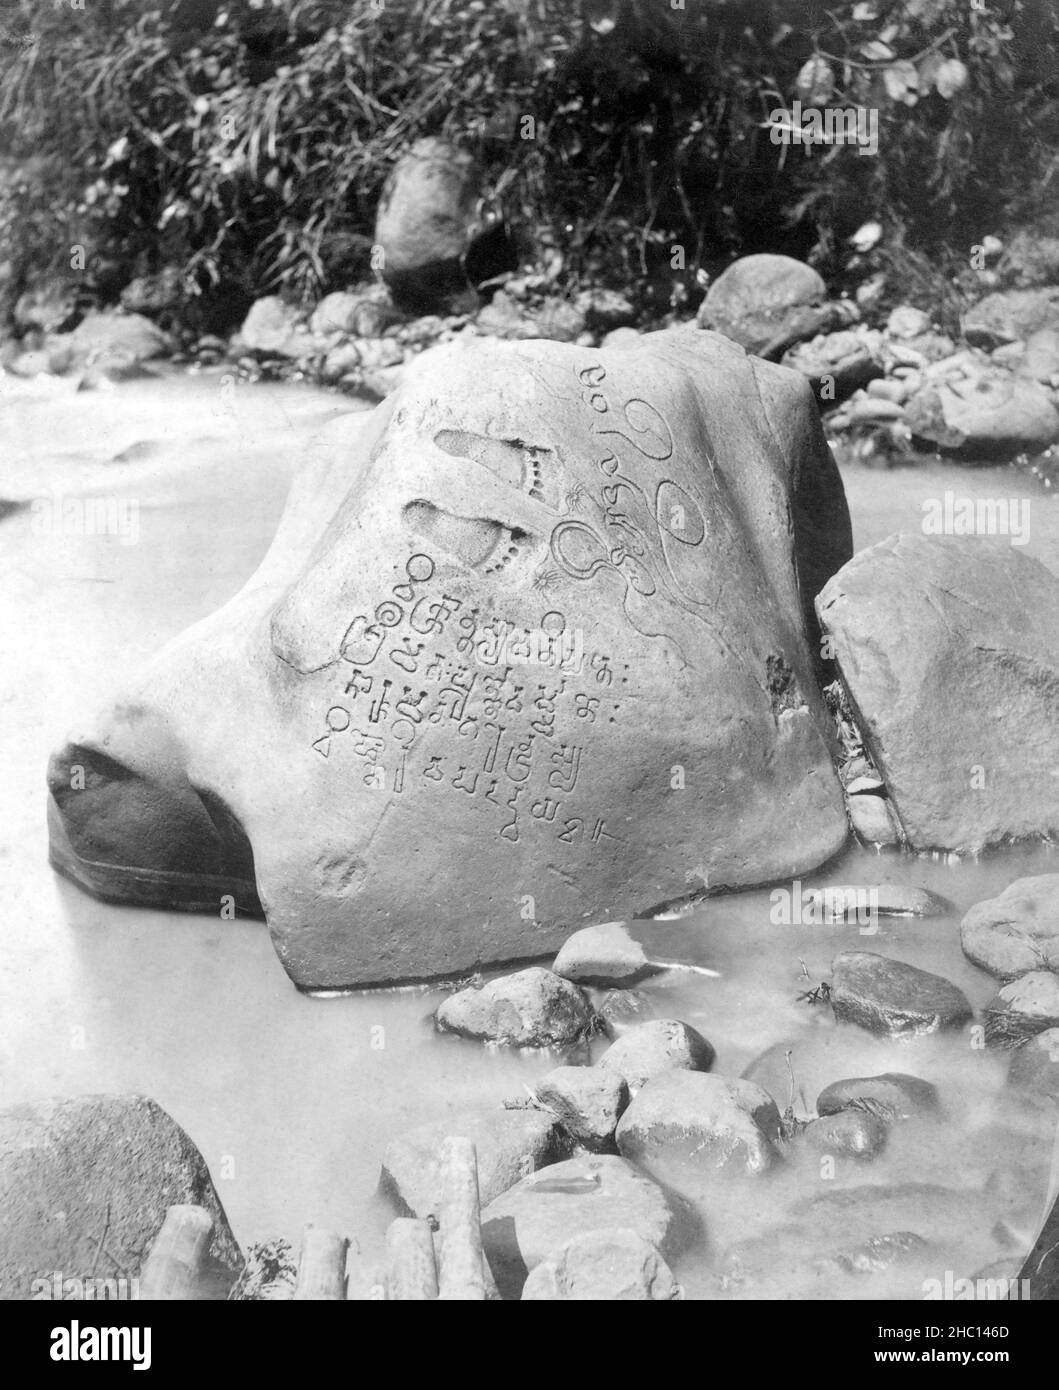 Indonesia: La piedra de inscripción de Ciaruteun del siglo 5th, el río Ciaruteun, el distrito de Cibungbulang, la regencia de Bogor, Java occidental. Foto de Isidore van Kinsbergen (1821 - 1905), finales del siglo 19th. La inscripción Ciaruteun, también escrita Ciarutön o también conocida como inscripción Ciampea es una inscripción de piedra del siglo 5th descubierta en el lecho del río Ciaruteun, un afluente del río Cisadane, no lejos de Bogor, Java Occidental, Indonesia. La inscripción está fechada en el período del reino de Tarumanagara, uno de los primeros reinos hindúes en la historia de Indonesia. Foto de stock